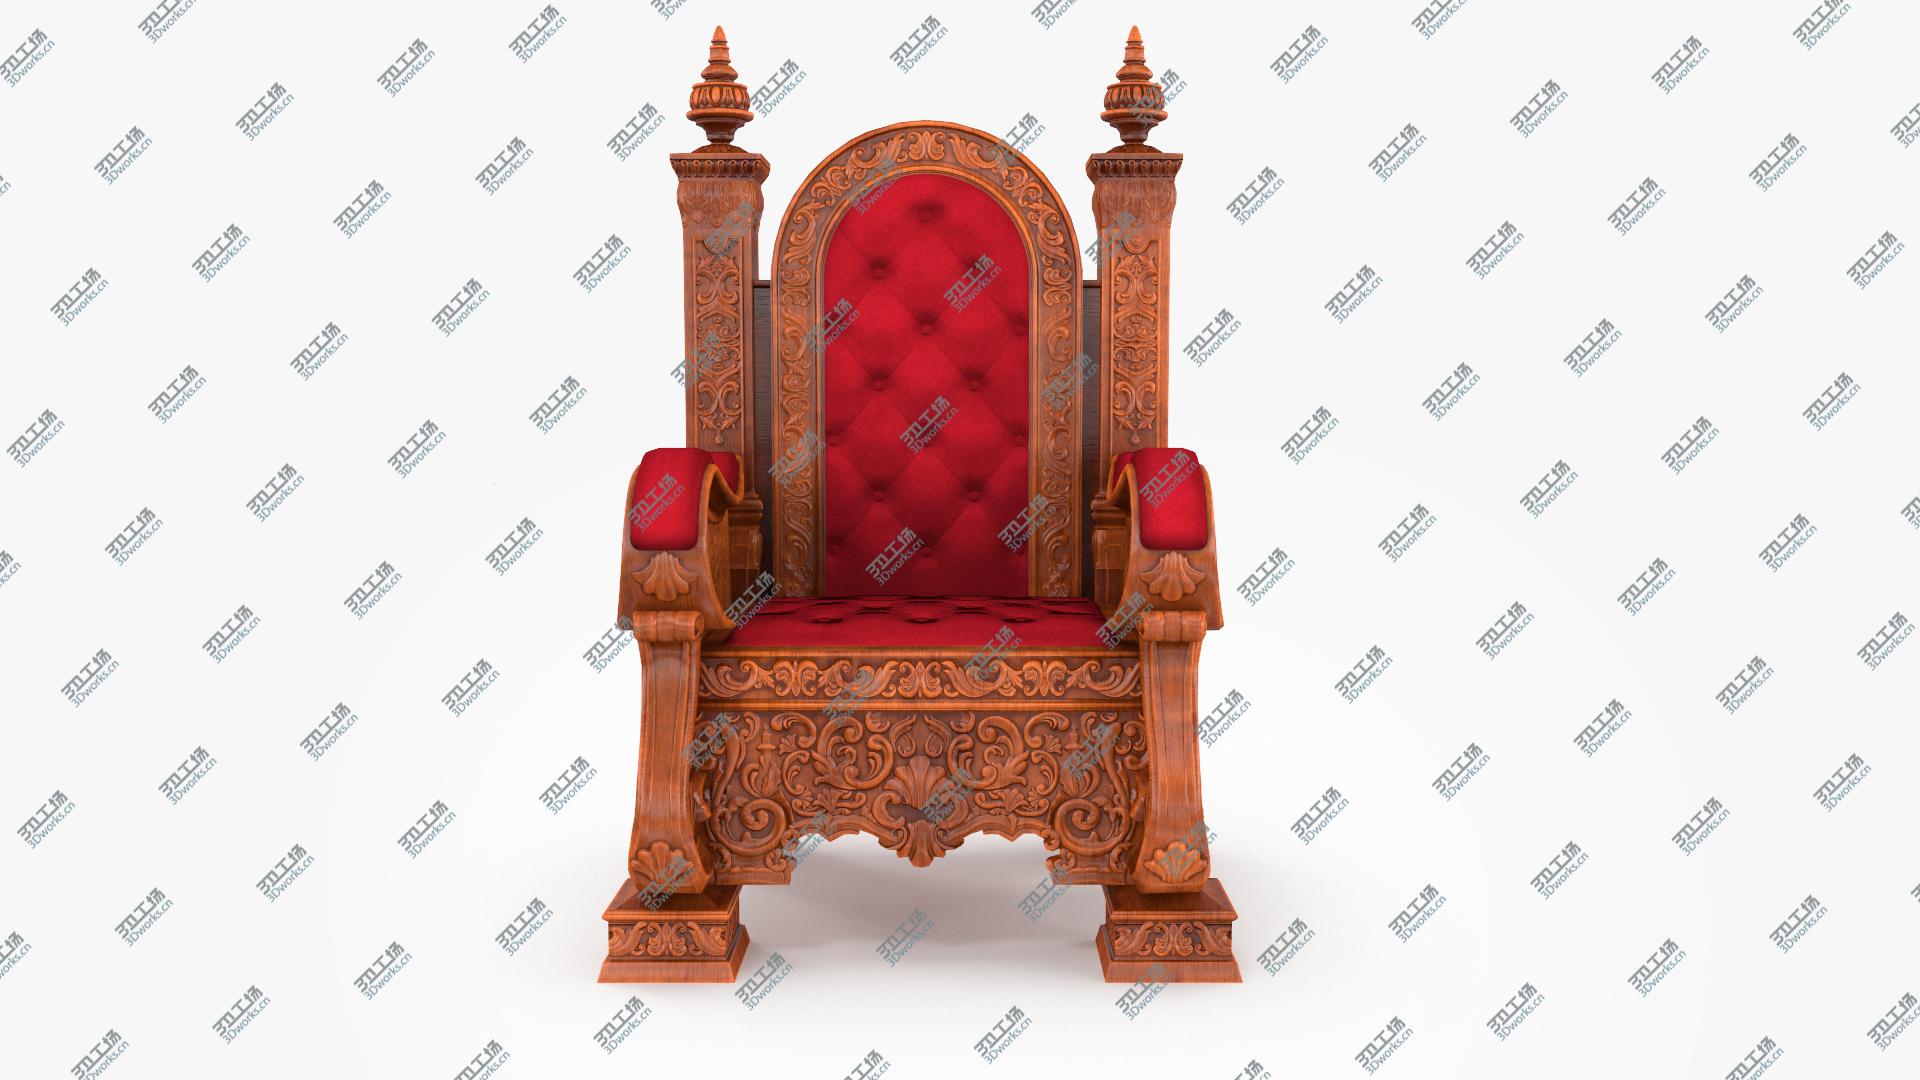 images/goods_img/202105074/Wooden Throne 3D model/1.jpg